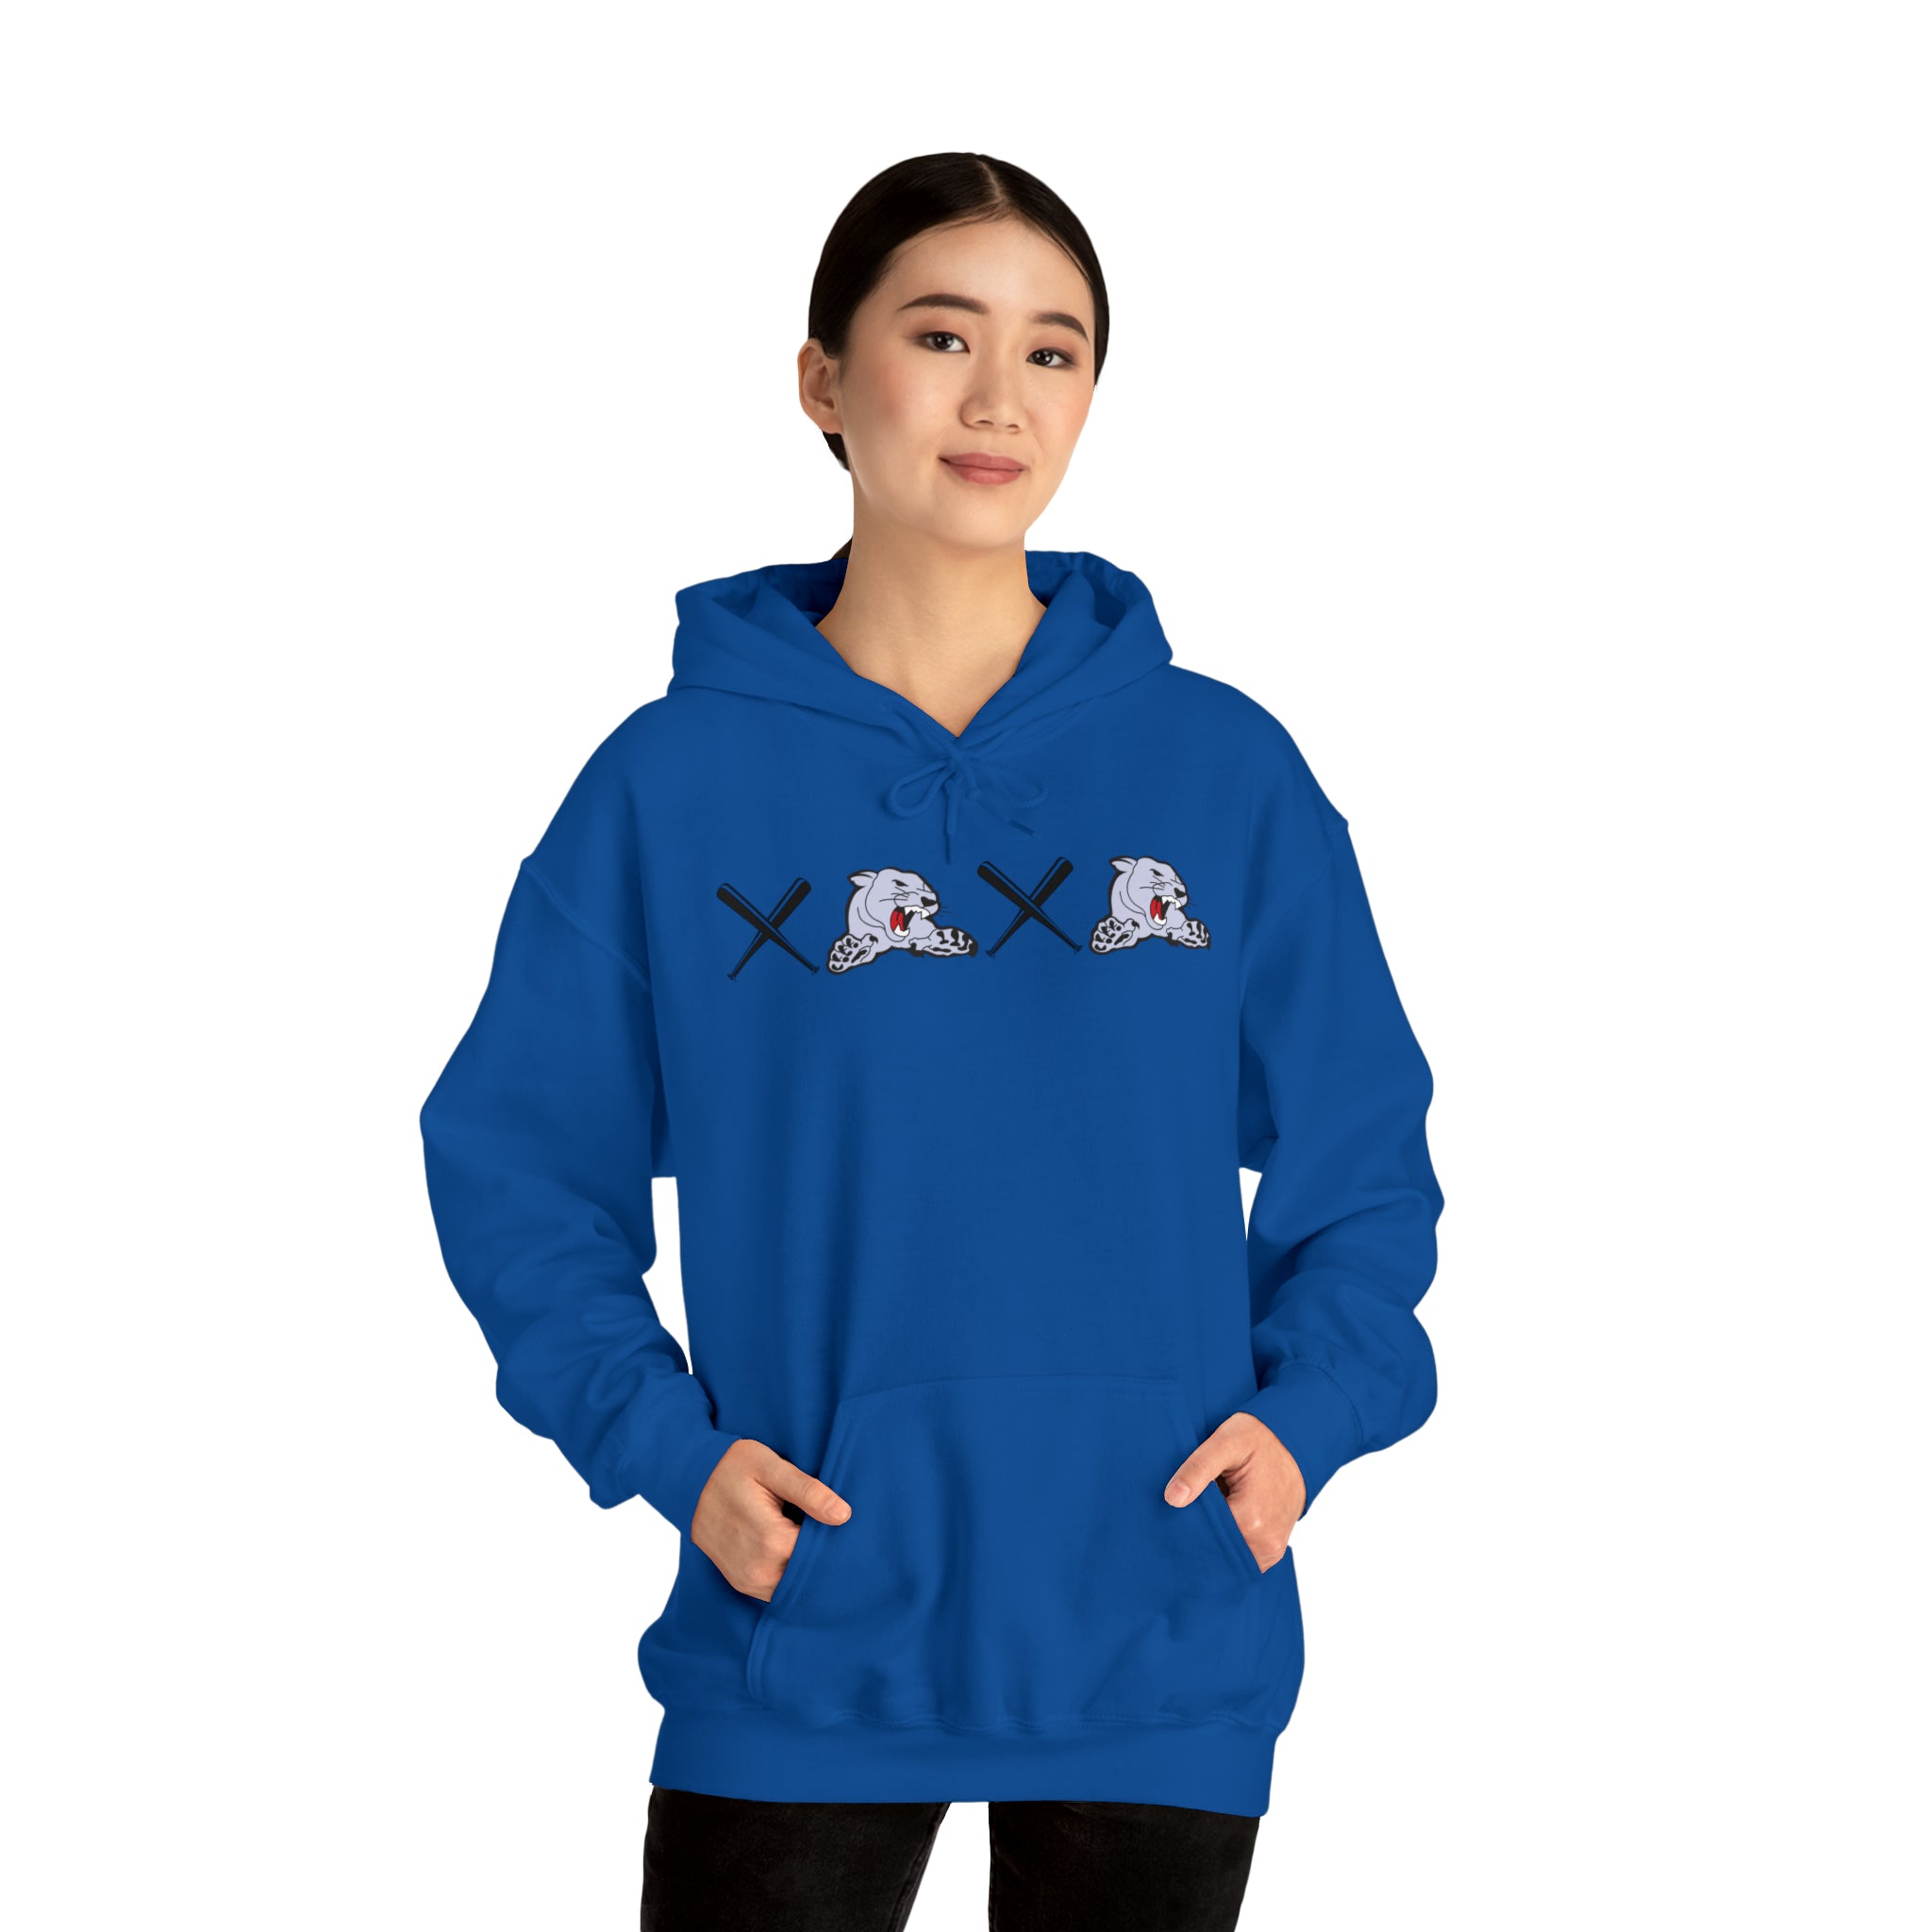 Cougar XO XO Hooded Sweatshirt